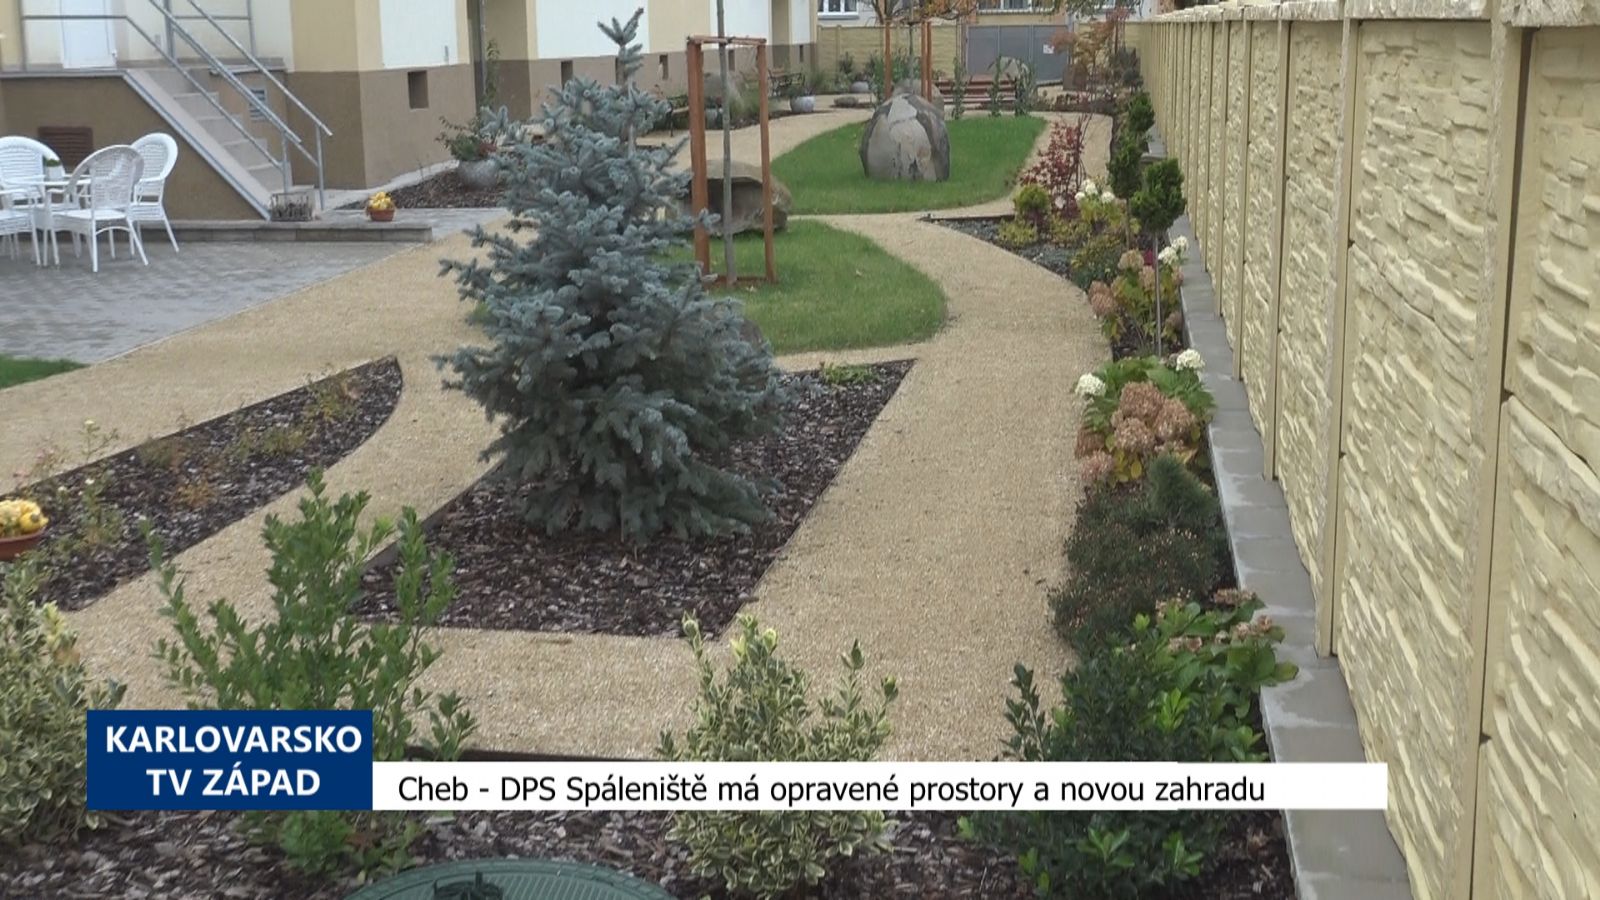 Cheb: DPS Spáleniště má opravené prostory a novou zahradu (TV Západ)